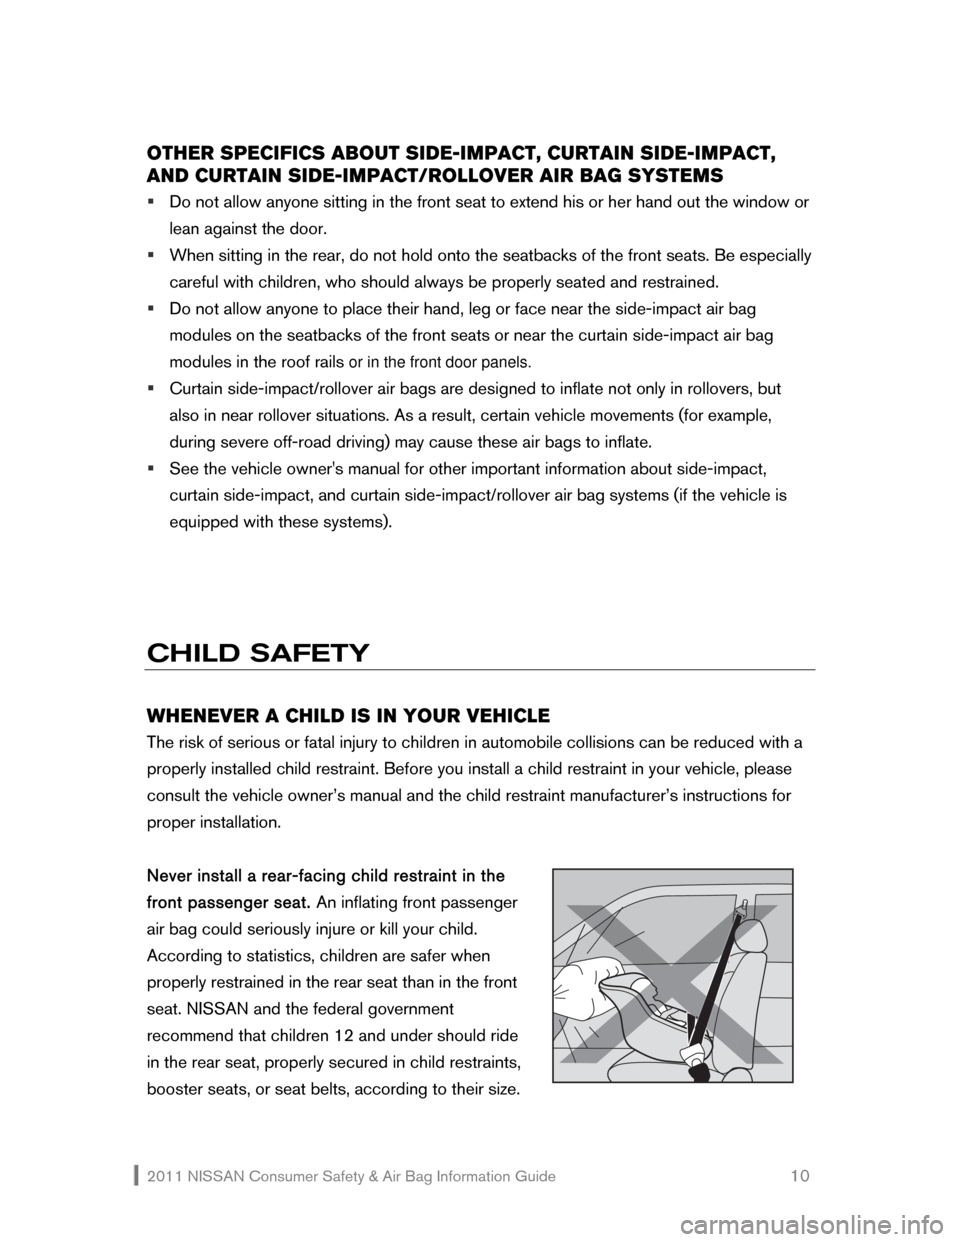 NISSAN VERSA HATCHBACK 2011 1.G Consumer Safety Air Bag Information Guide 2011 NISSAN Consumer Safety & Air Bag Information Guide                                                       10 
OTHER SPECIFICS ABOUT SIDE-IMPACT, CURTAIN SIDE-IMPACT, 
AND CURTAIN SIDE-IMPACT/ROLLO